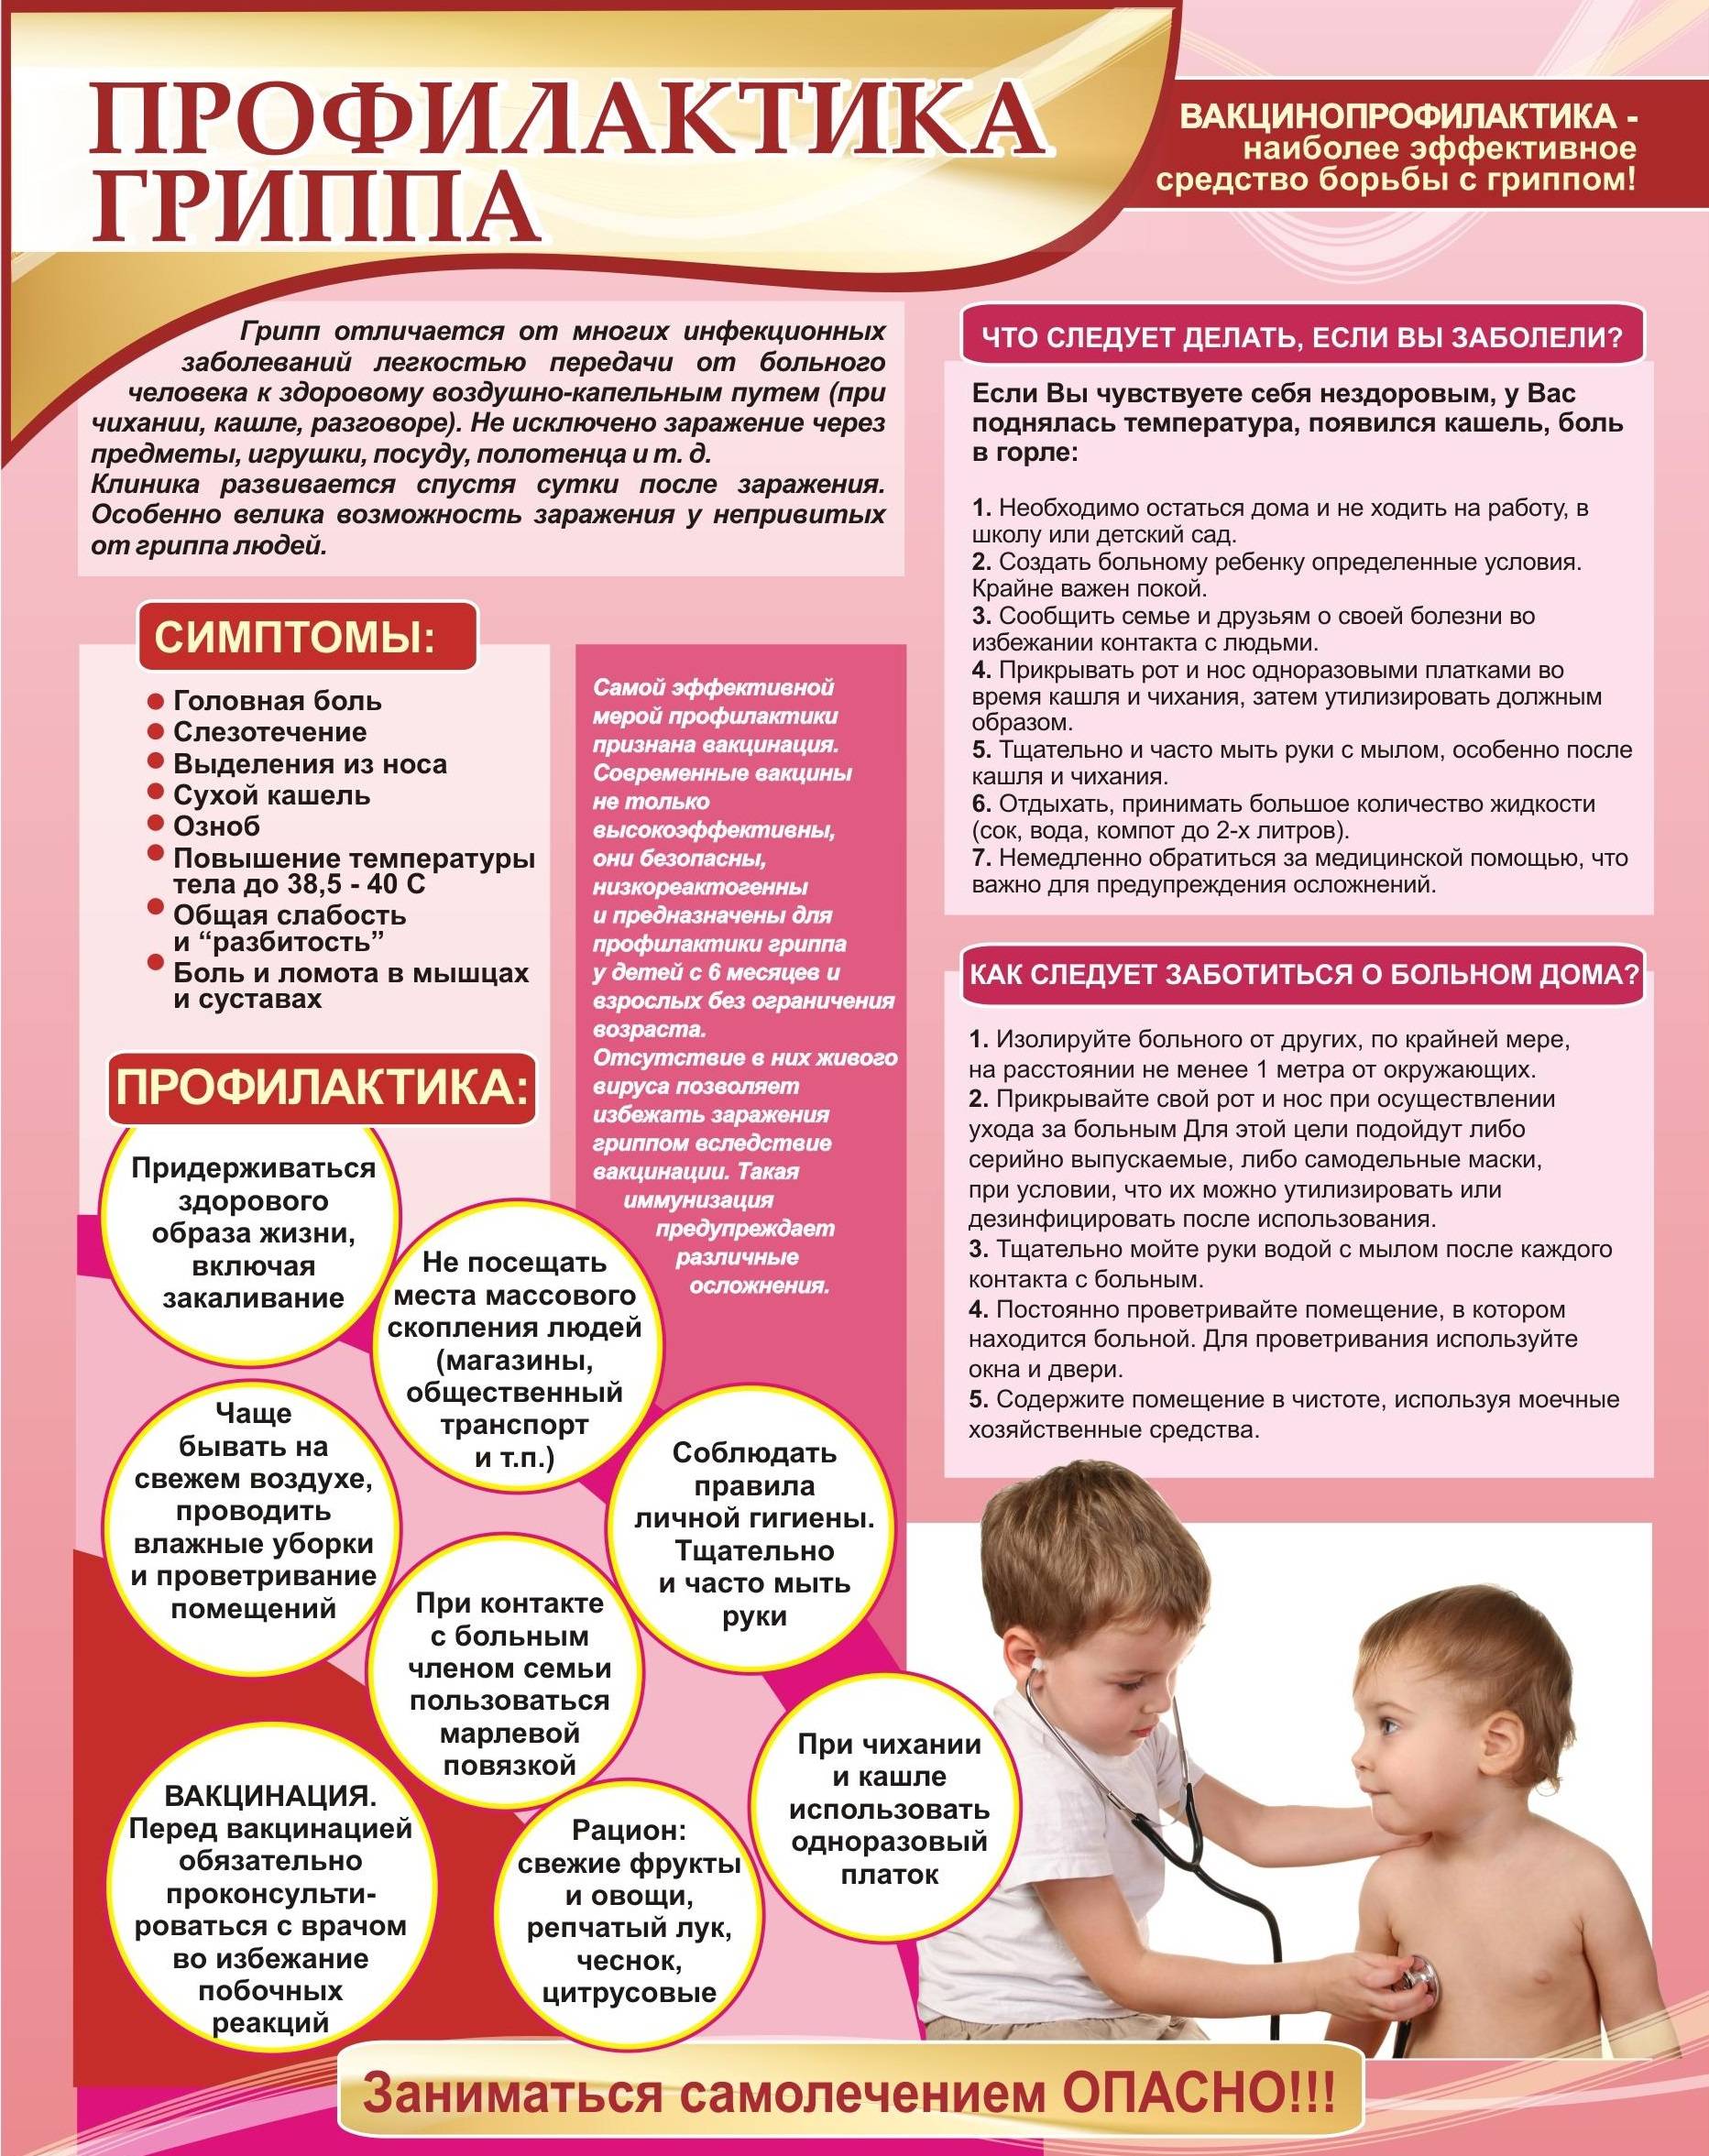 Тонзиллит (ангина) у детей: симптомы, диагностика и лечение